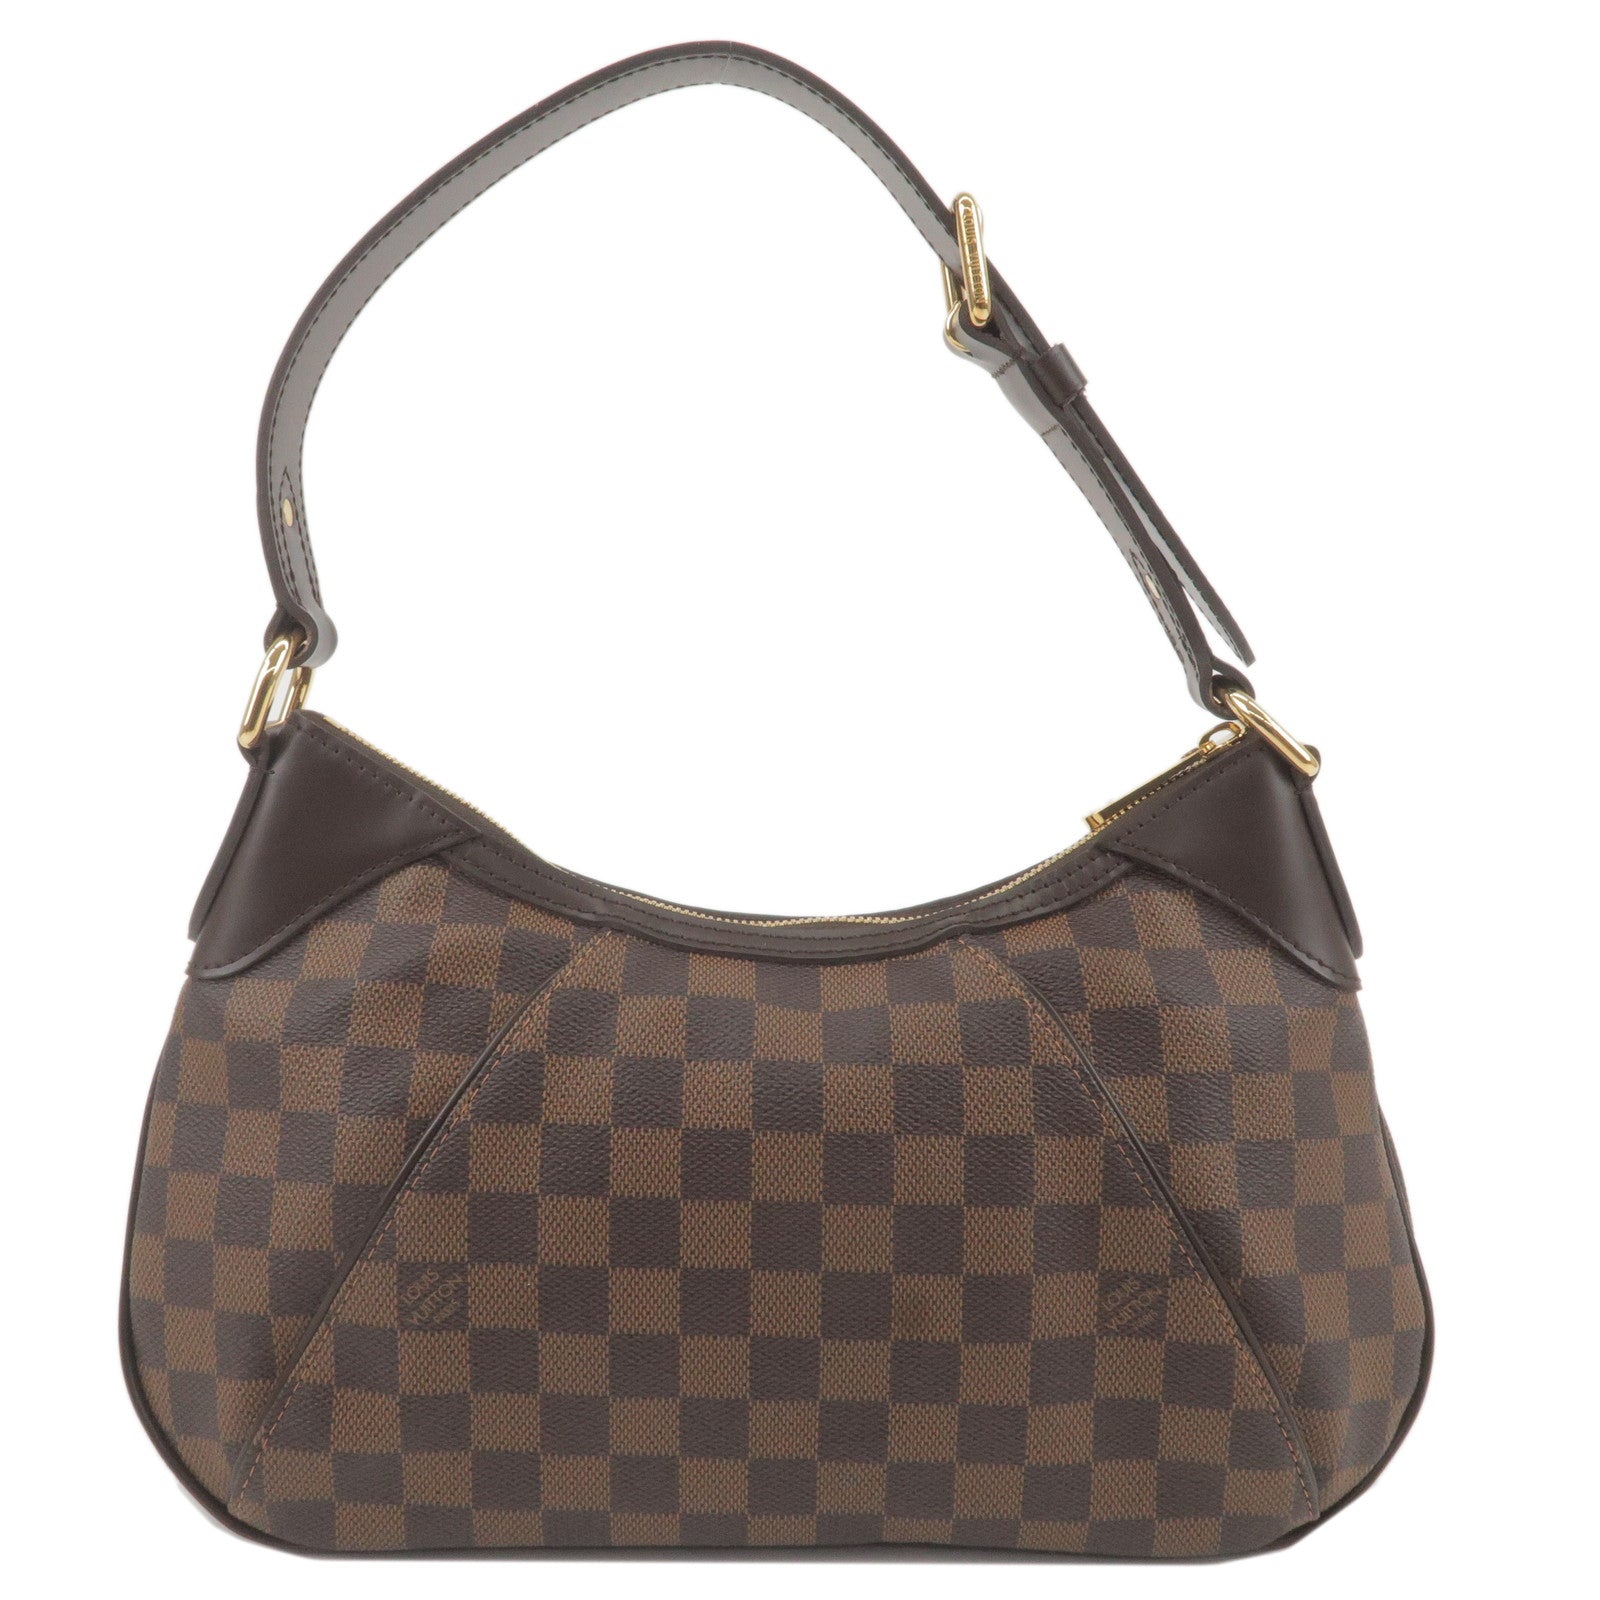 Sold at Auction: Vintage Louis Vuitton Monogram PM Crossbody Bag